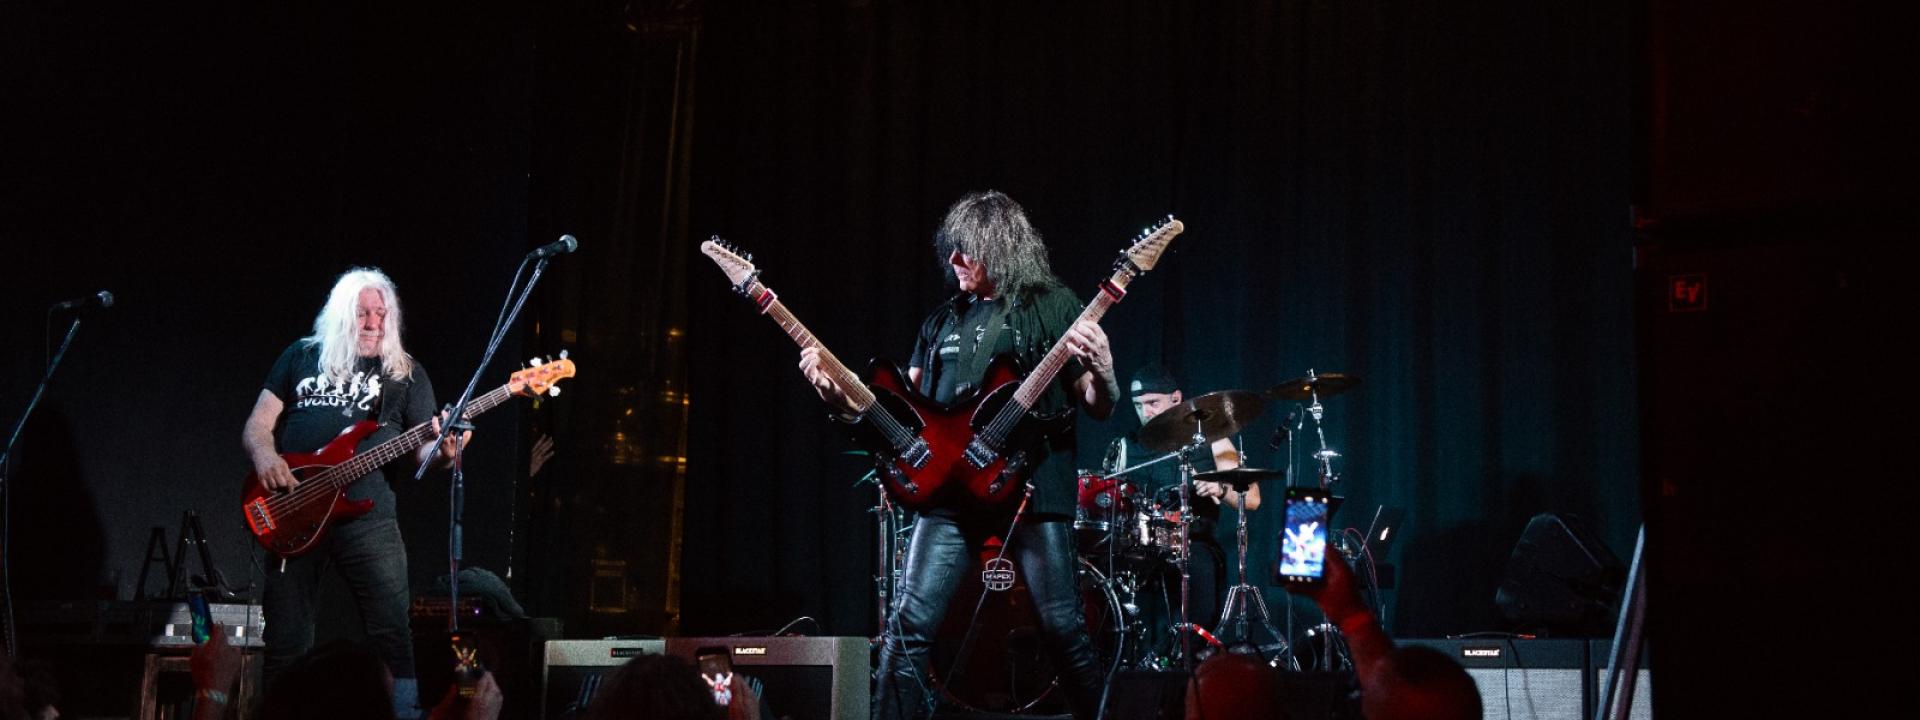 Macerata, l'Electric Guitarlands ha scosso la notte con la potenza del rock dei migliori chitarristi del mondo